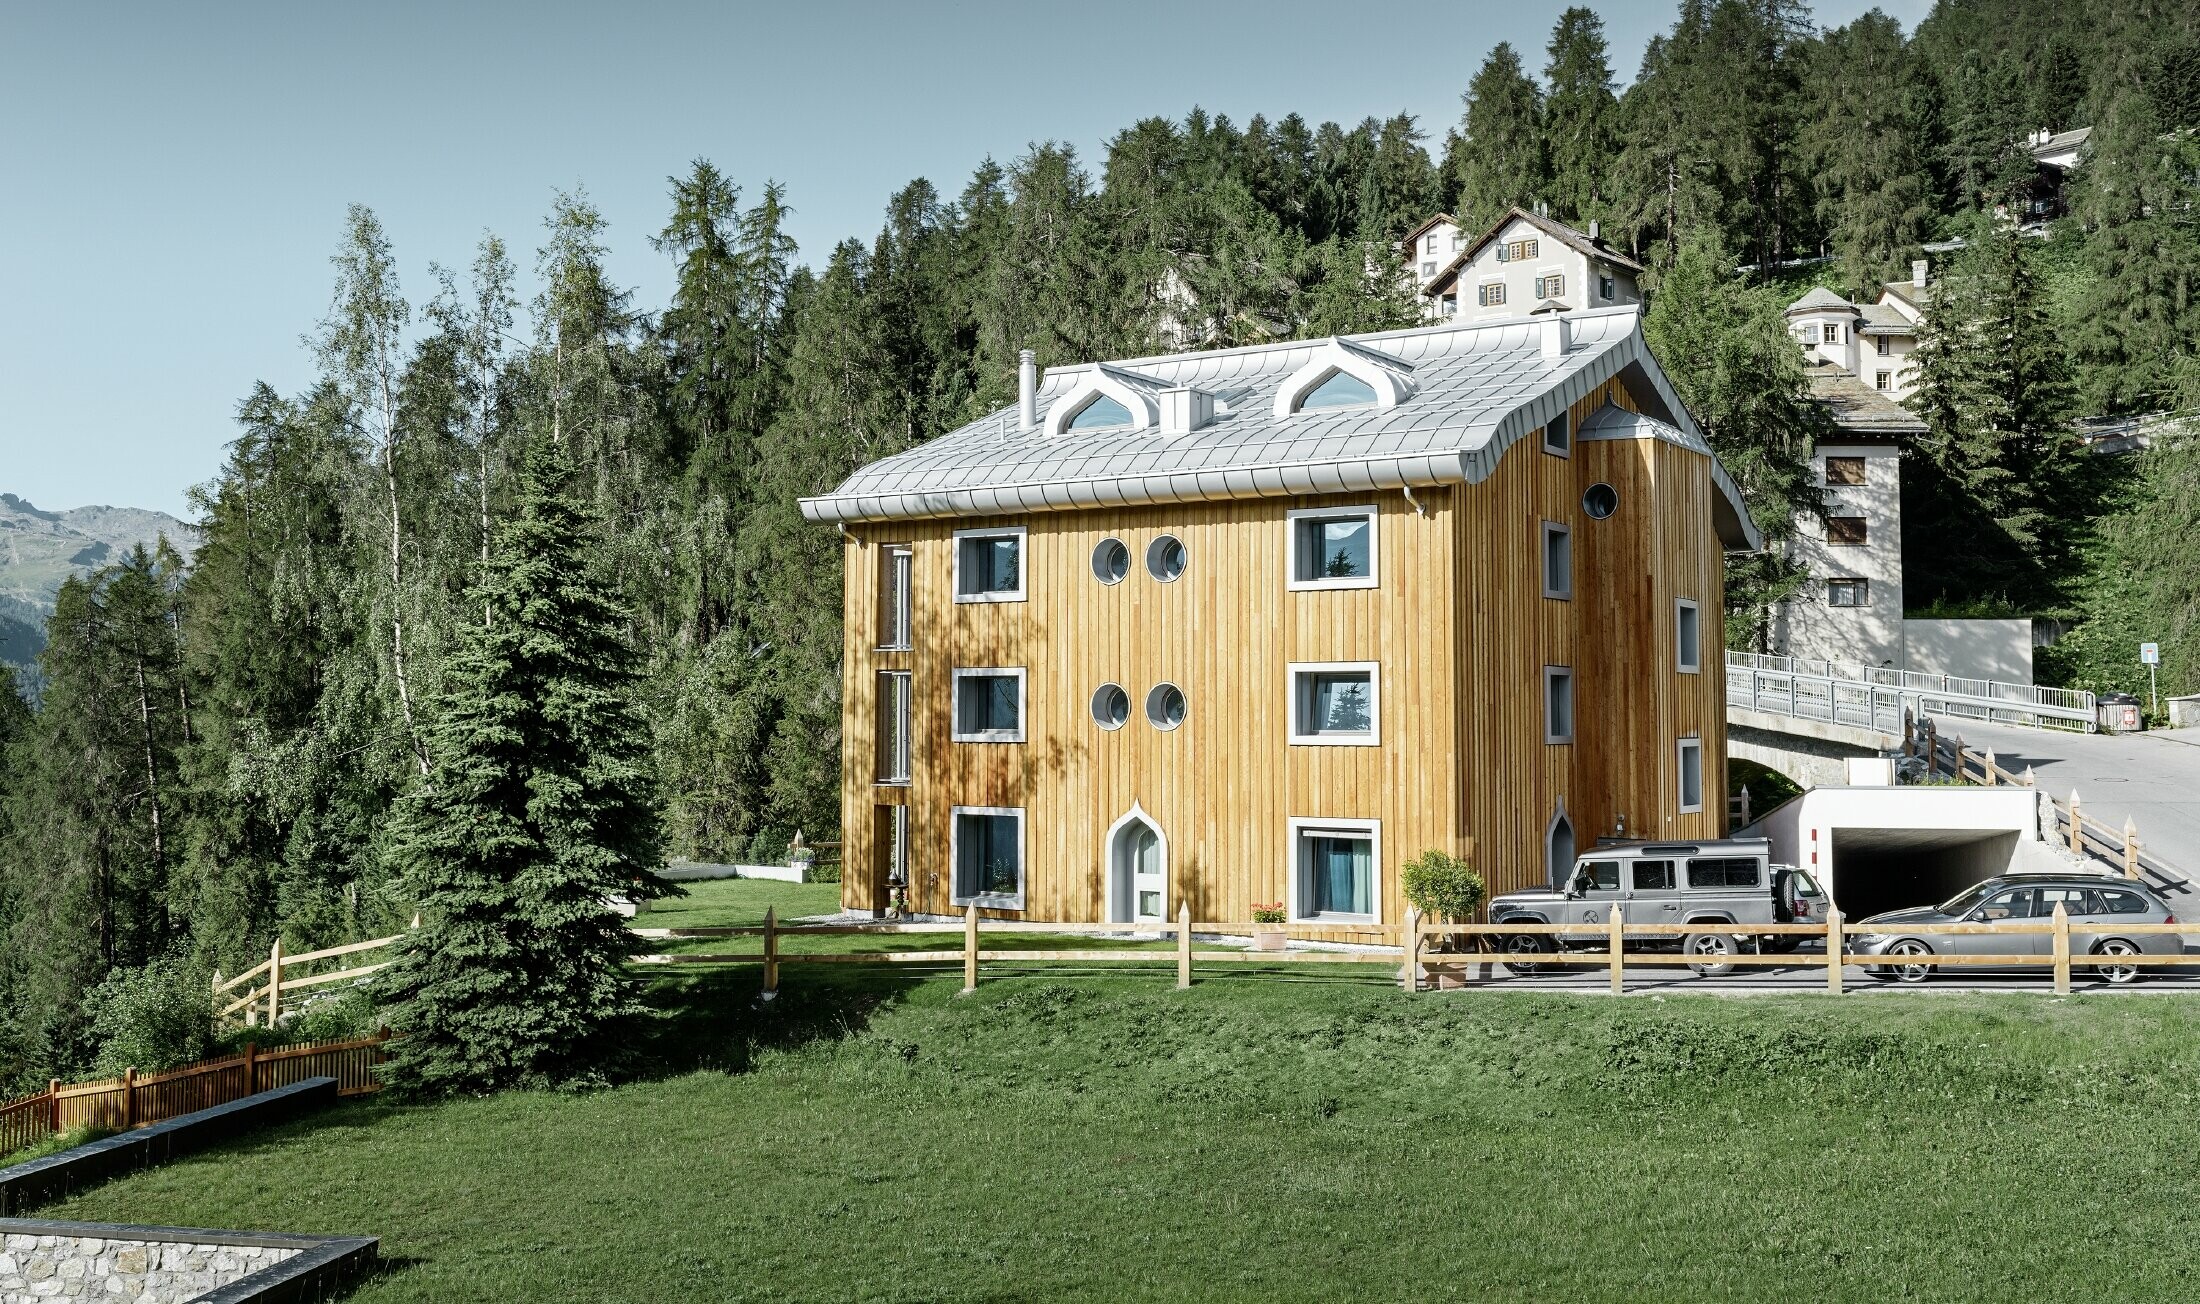 Wohnhausanlage in St. Moritz mit Holzfassade und Aluminiumdach mit geschwungener Traufe in silbermetallic